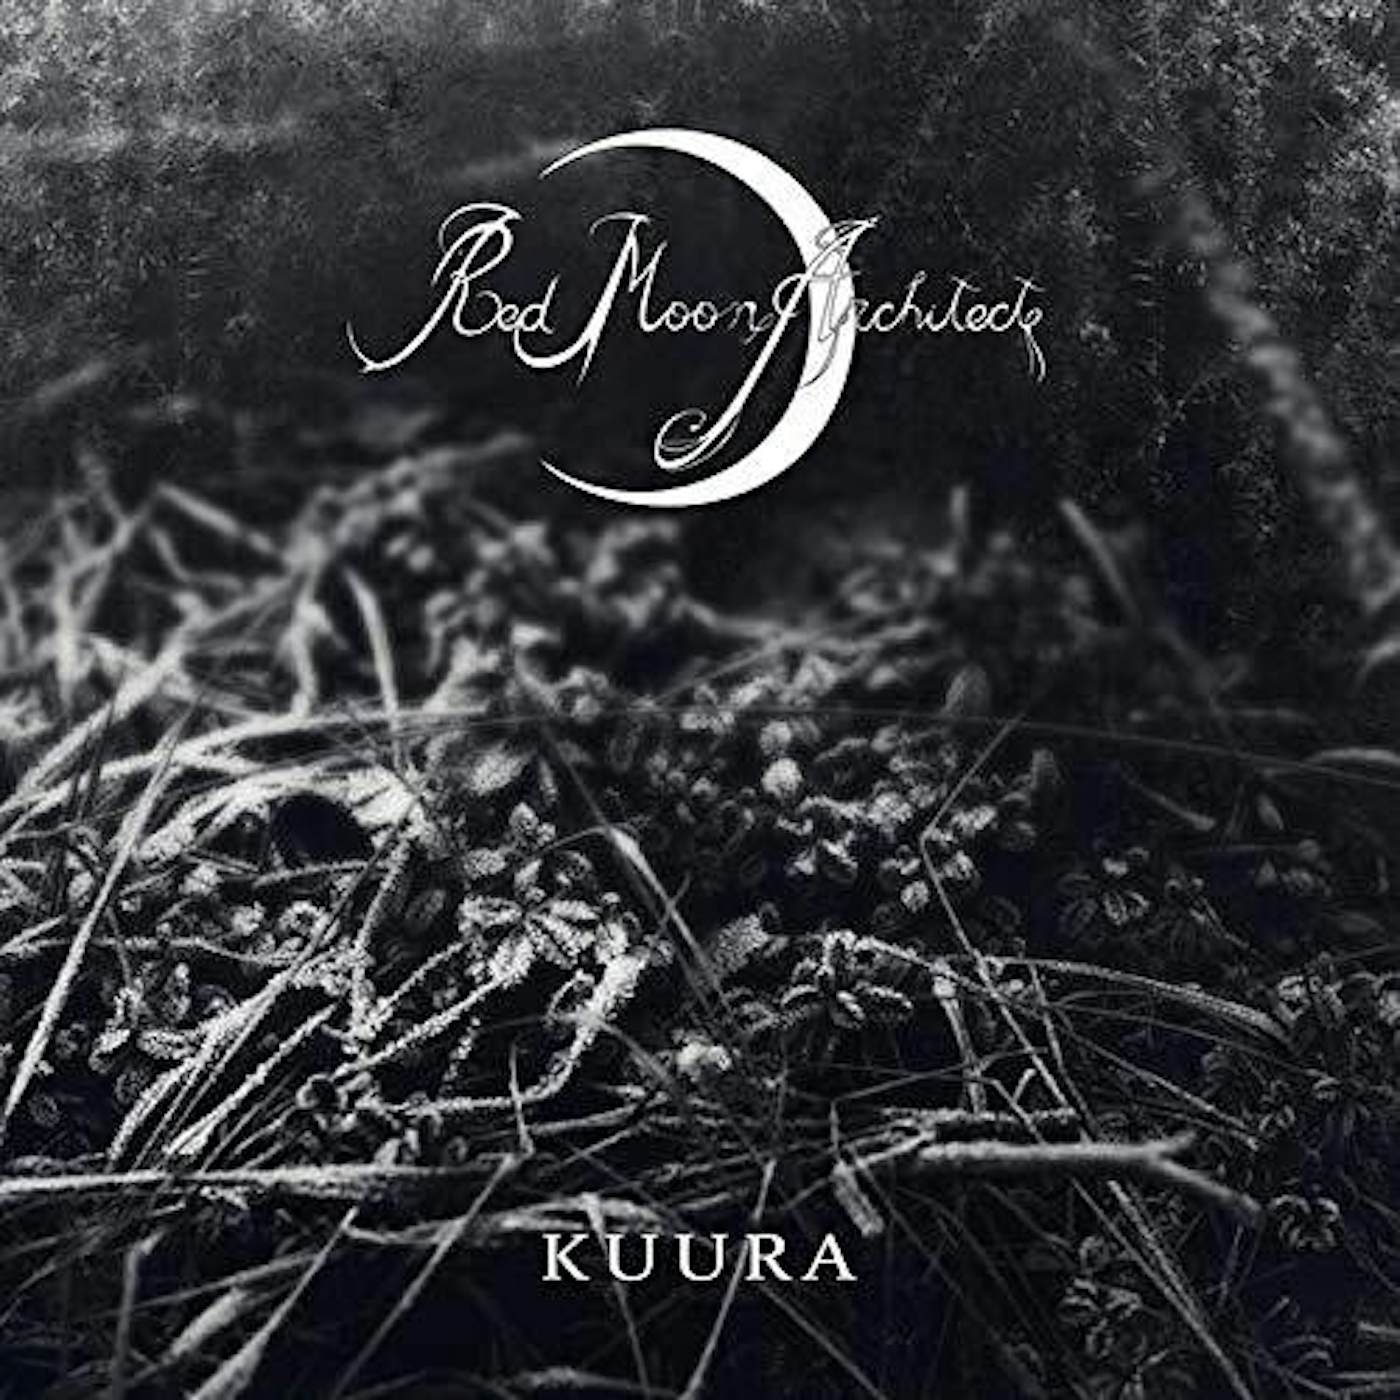 Red Moon Architecht KUURA Vinyl Record